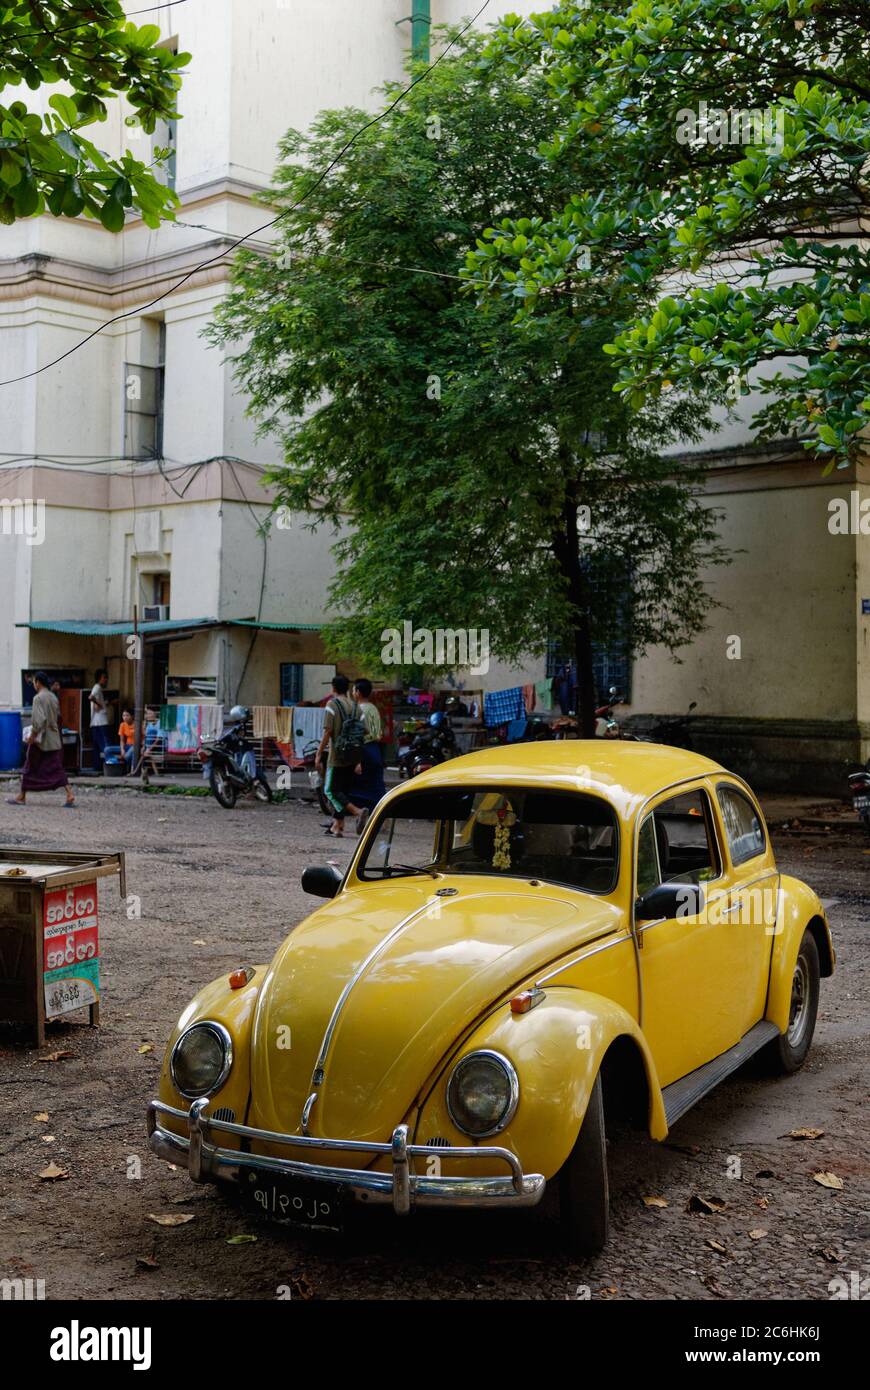 Yellow Volkswagen beetle car parking in downtown Yangon, Myanmar Stock Photo